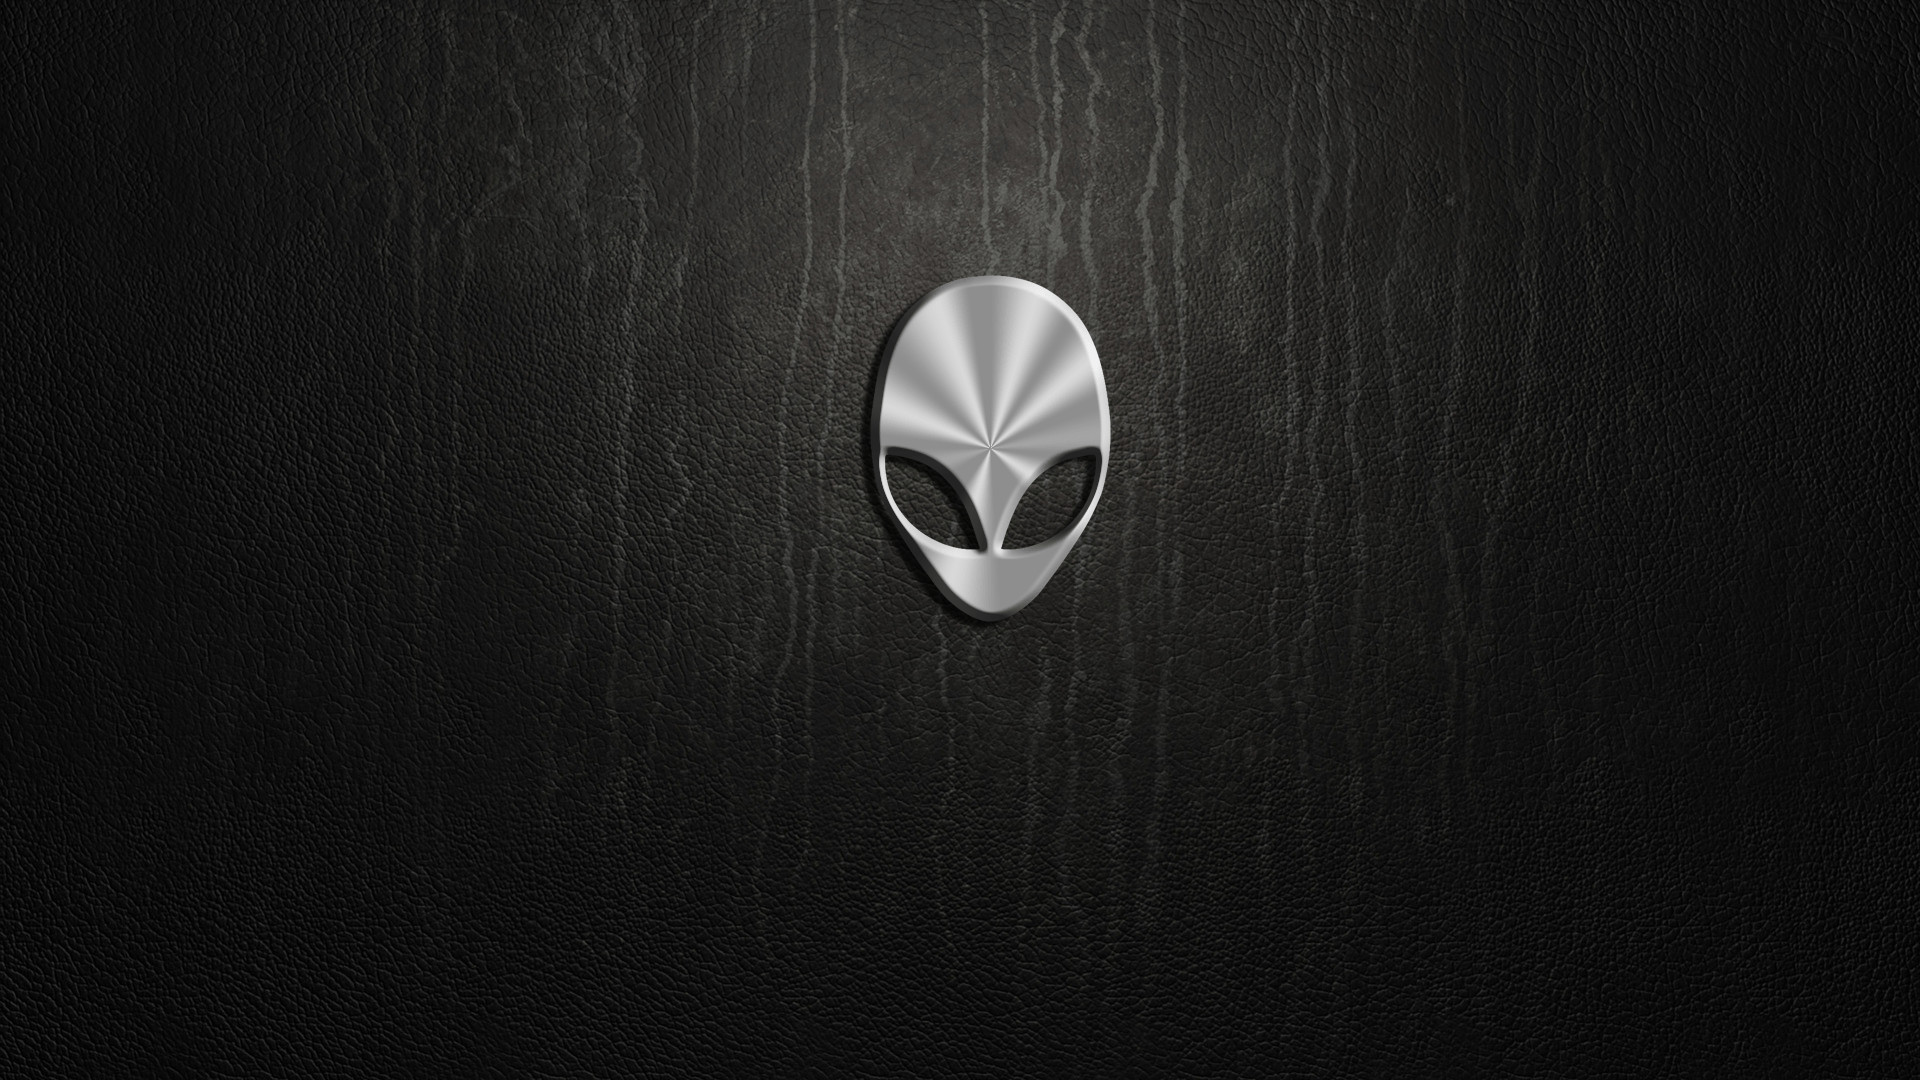 alienware wallpaper